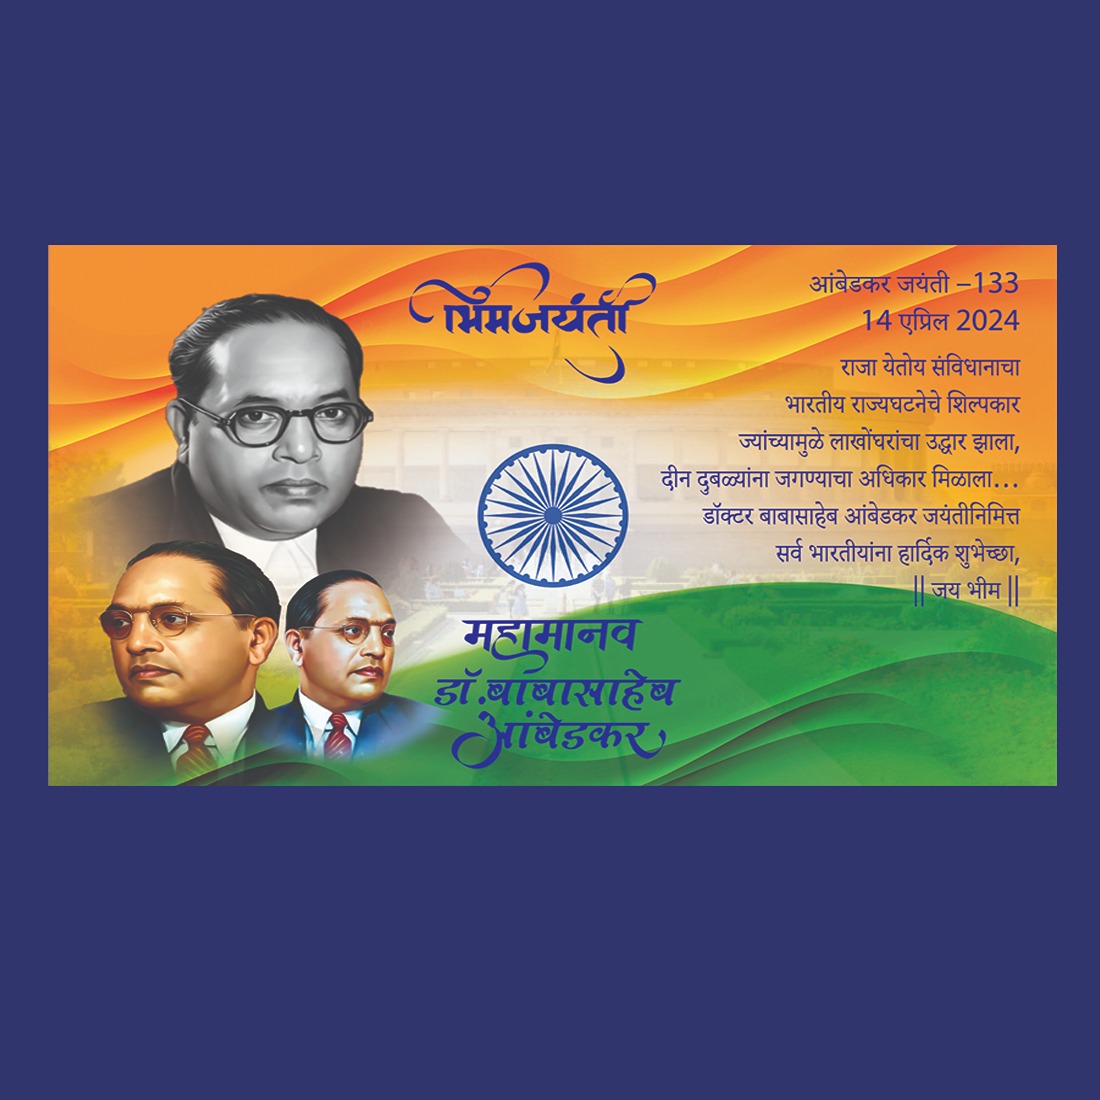 Dr Babasaheb Ambedkar - Jayanti Wishes In Marathi cover image.